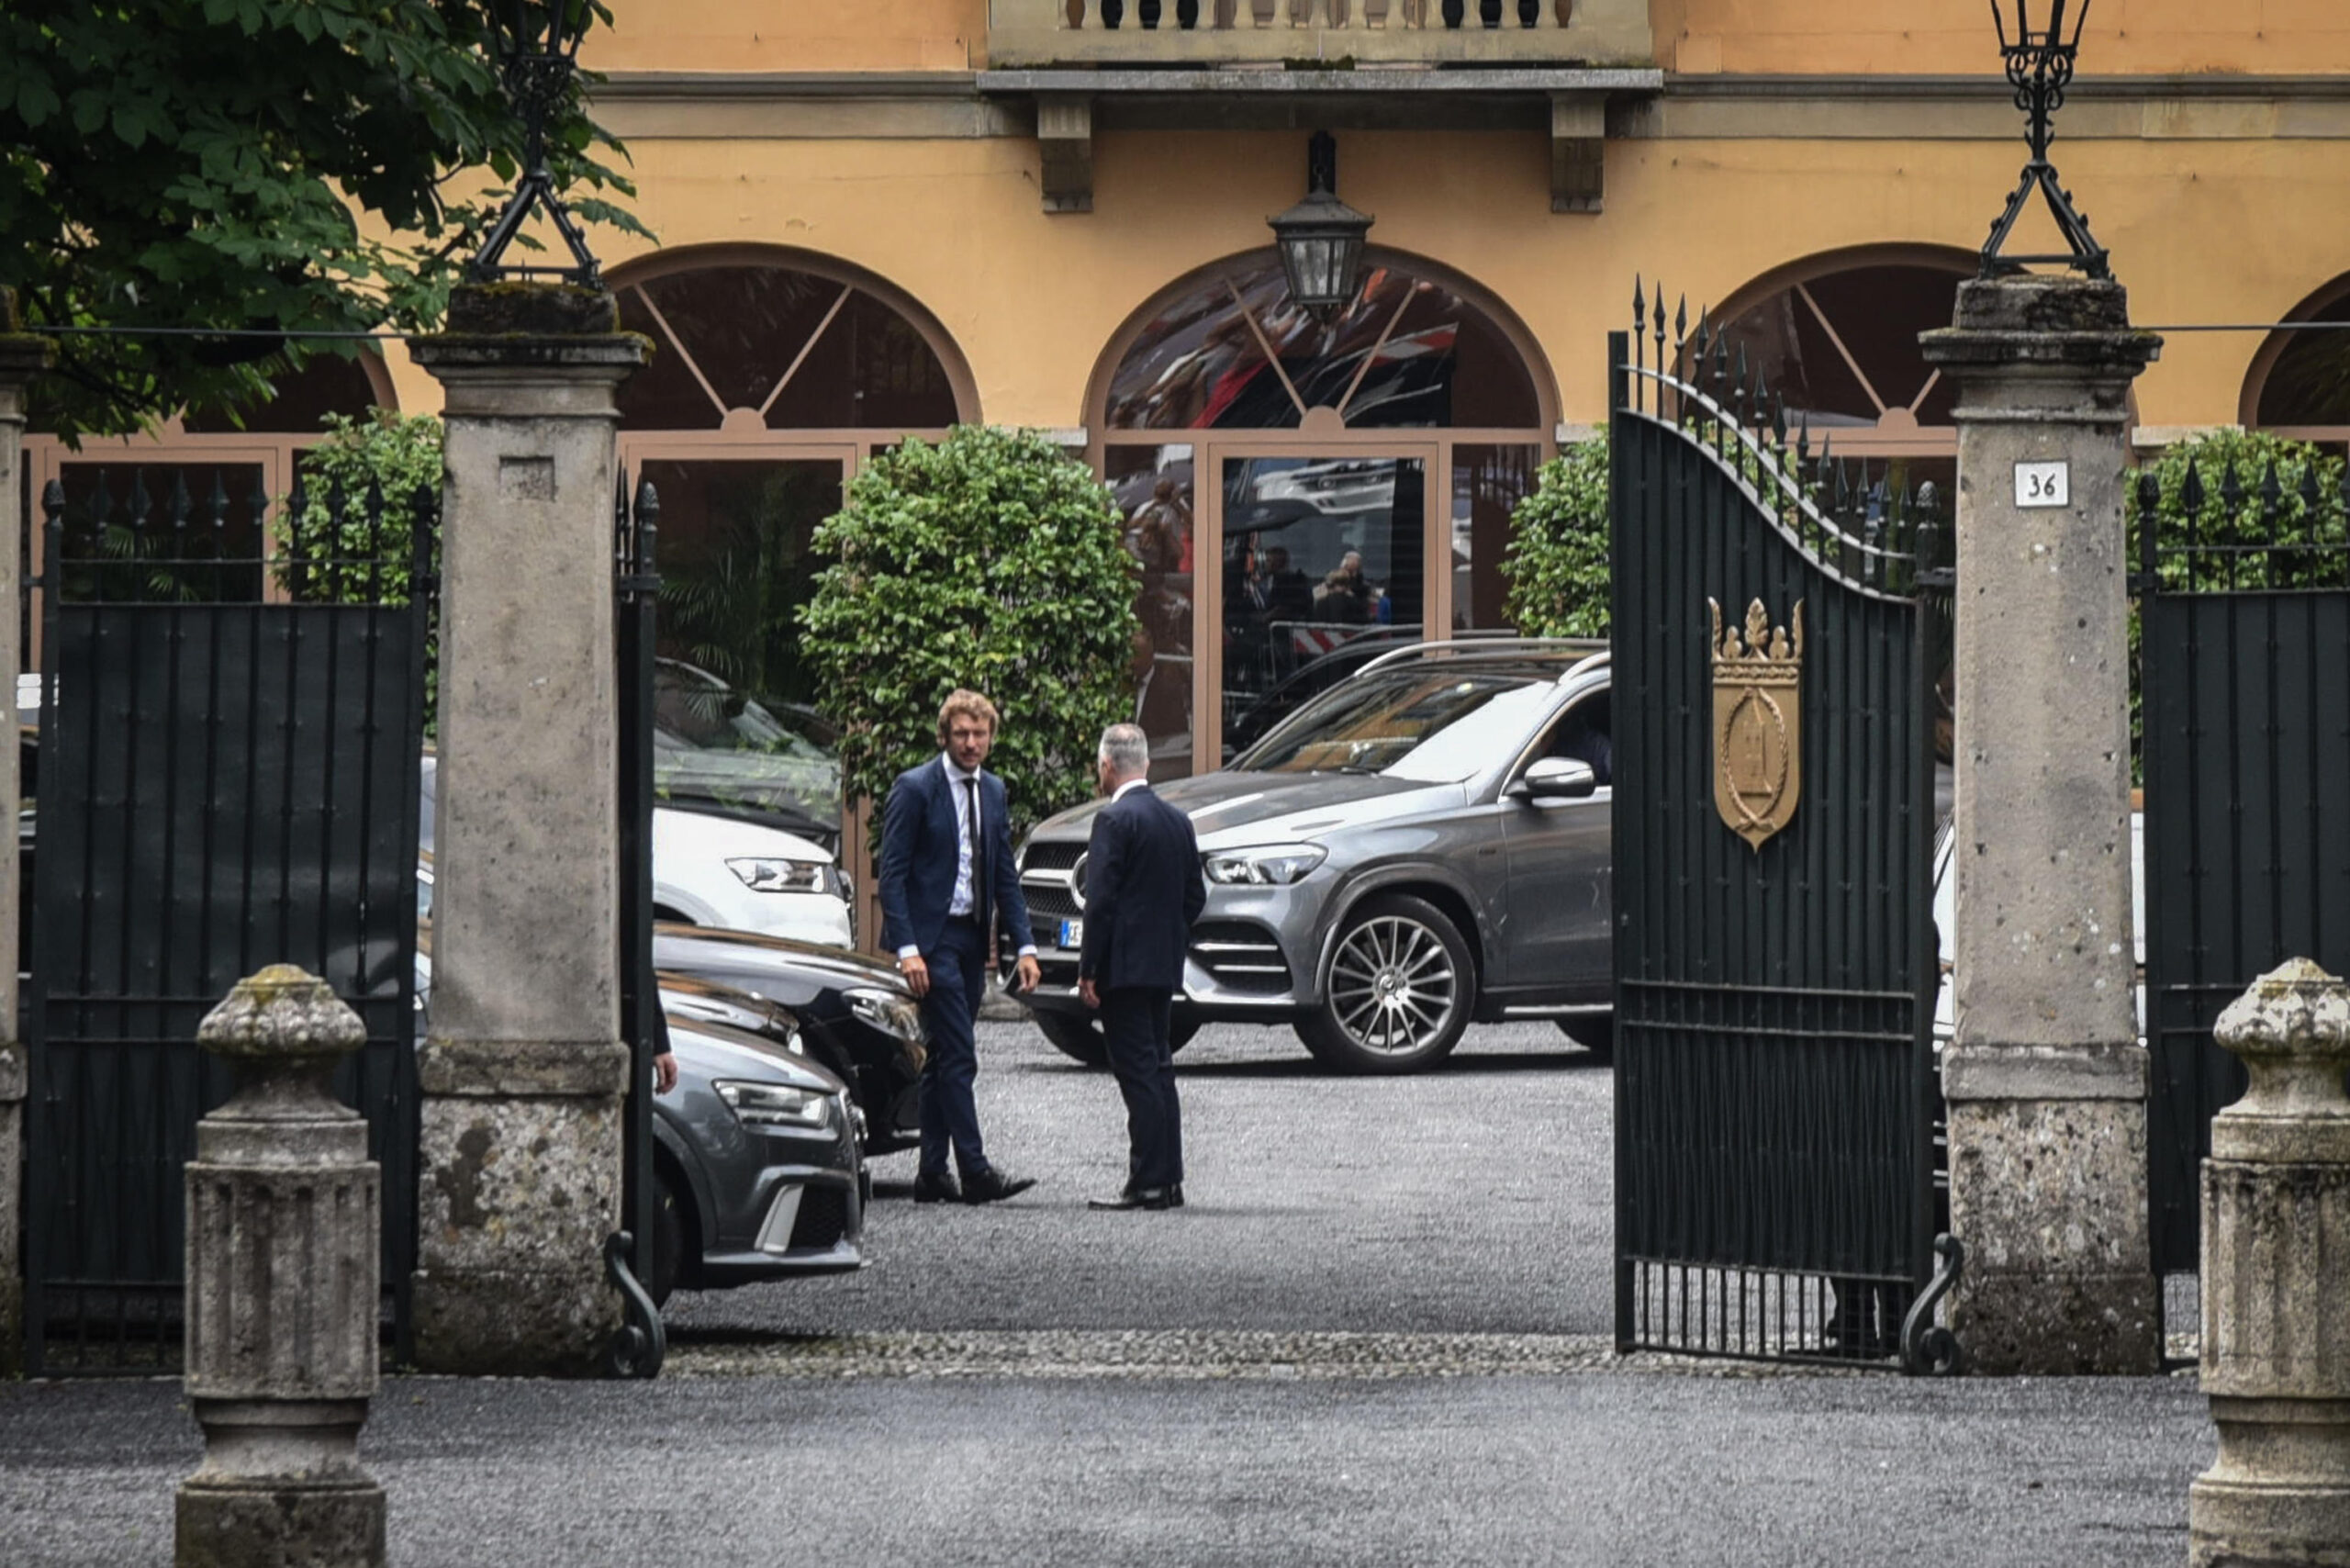 Villa san Martino ad Arcore dove e' stata allestita la camera ardente privata di Silvio Berlusconi, Milano, 13 Giugno 2023.
ANSA/MATTEO CORNER